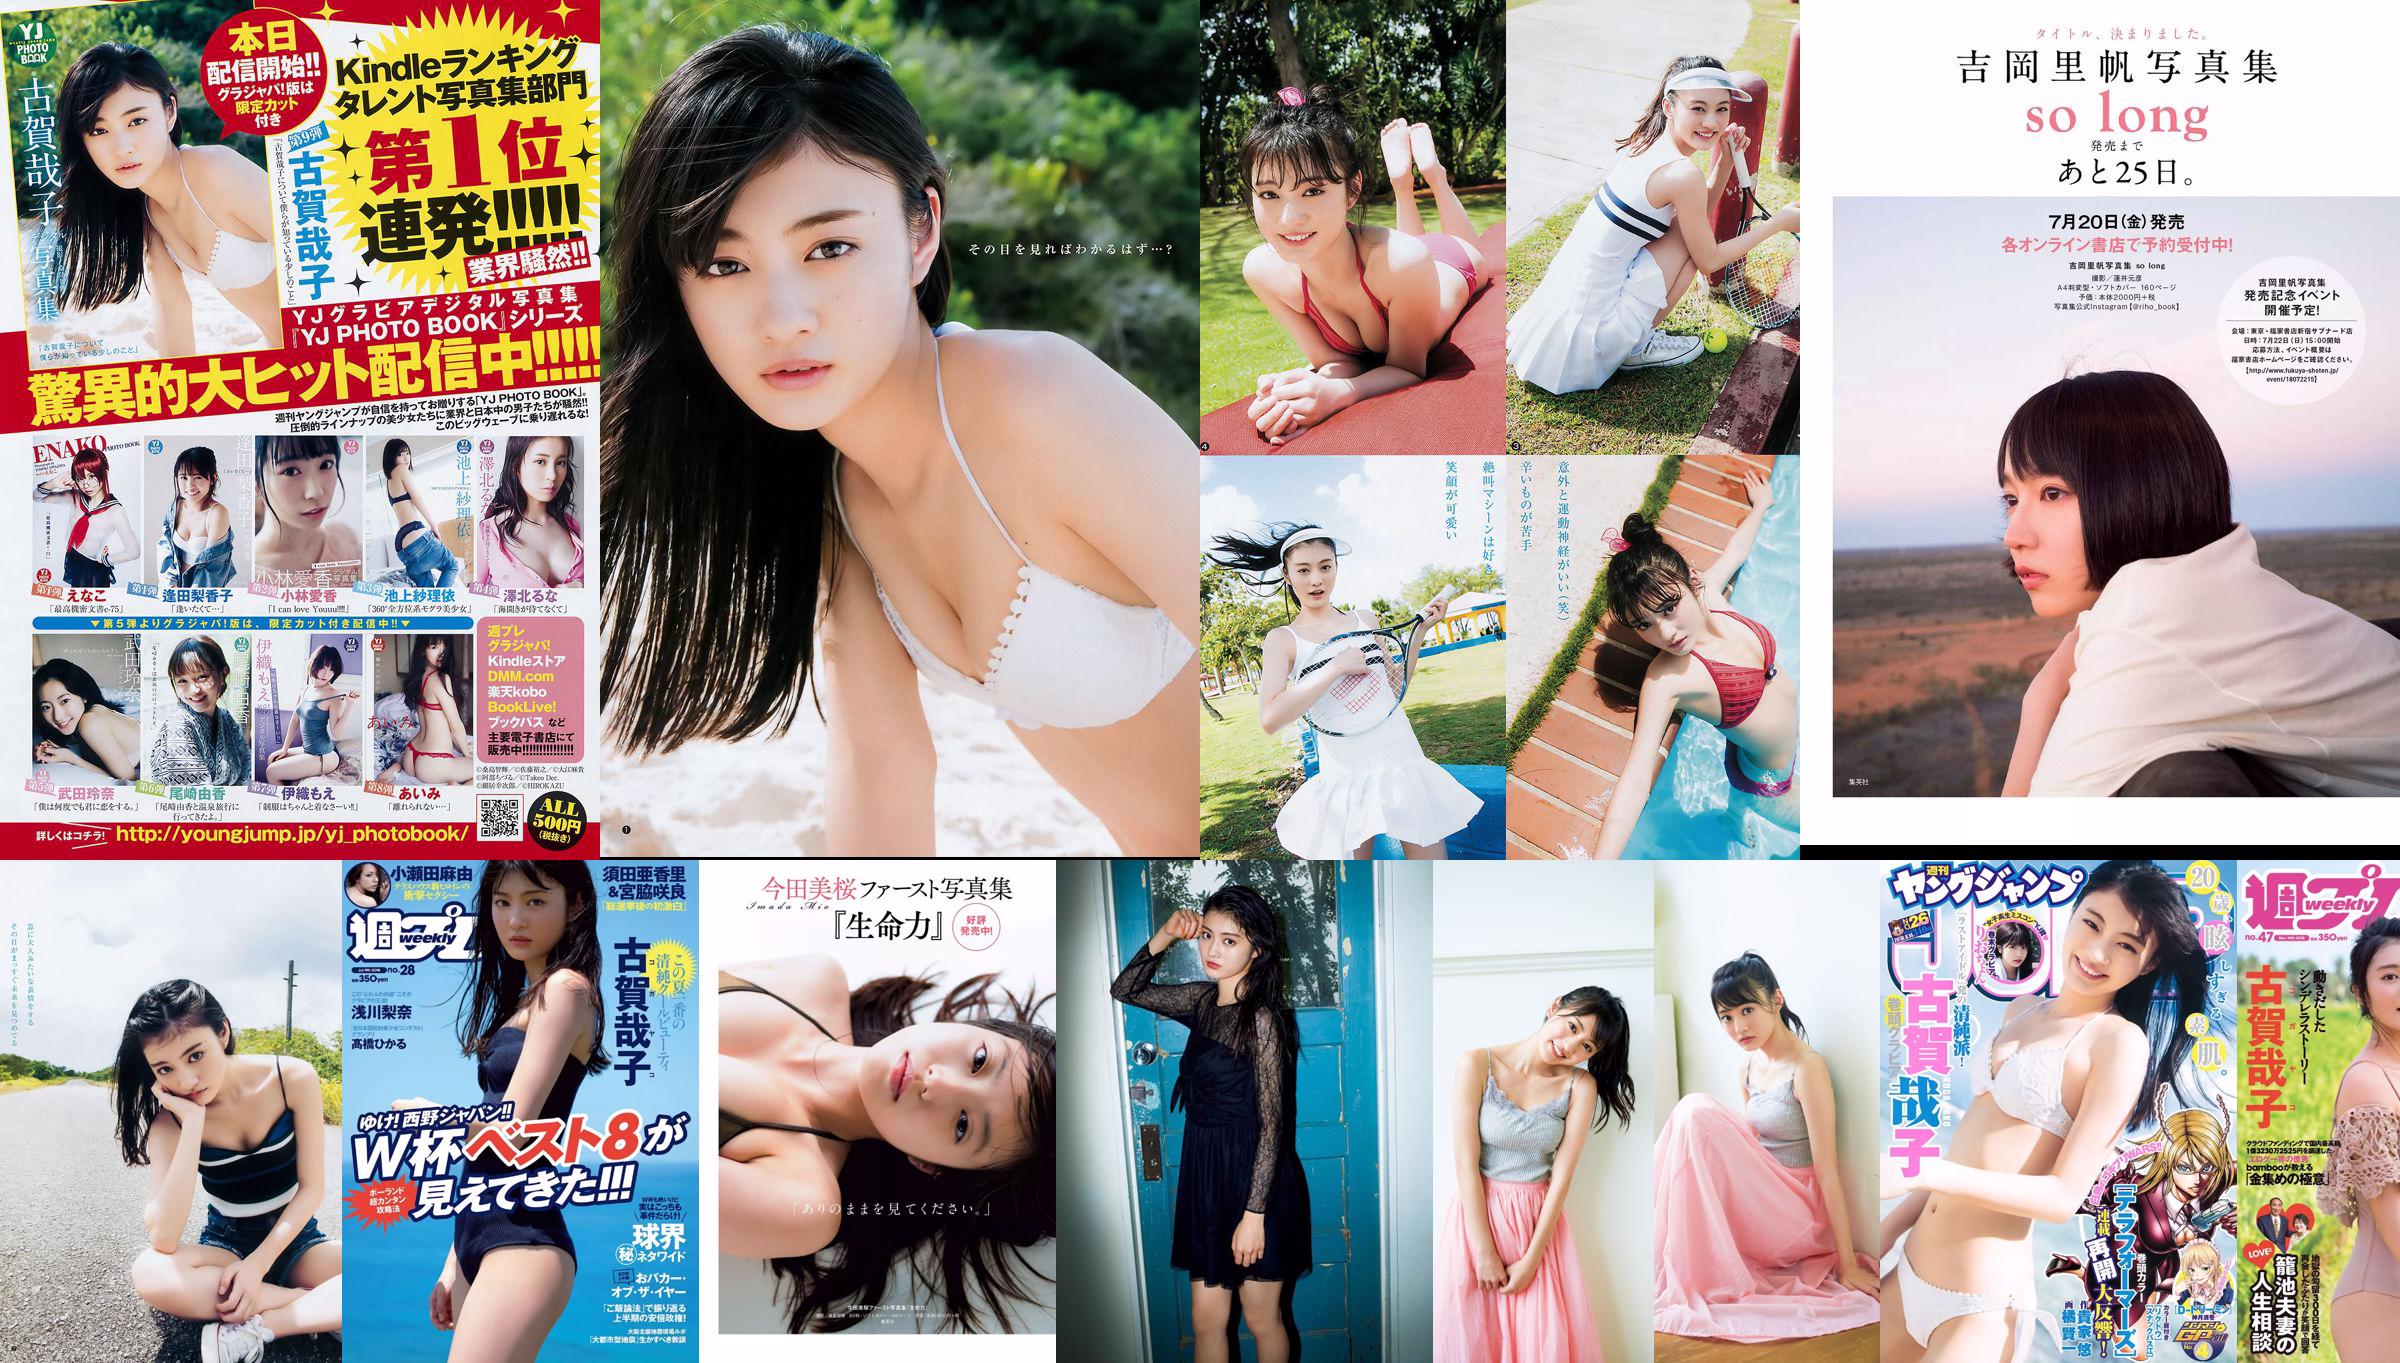 Yoshiko Koga Riochon [Weekly Young Jump] Revista fotográfica n. ° 26 en 2018 No.c13a88 Página 1